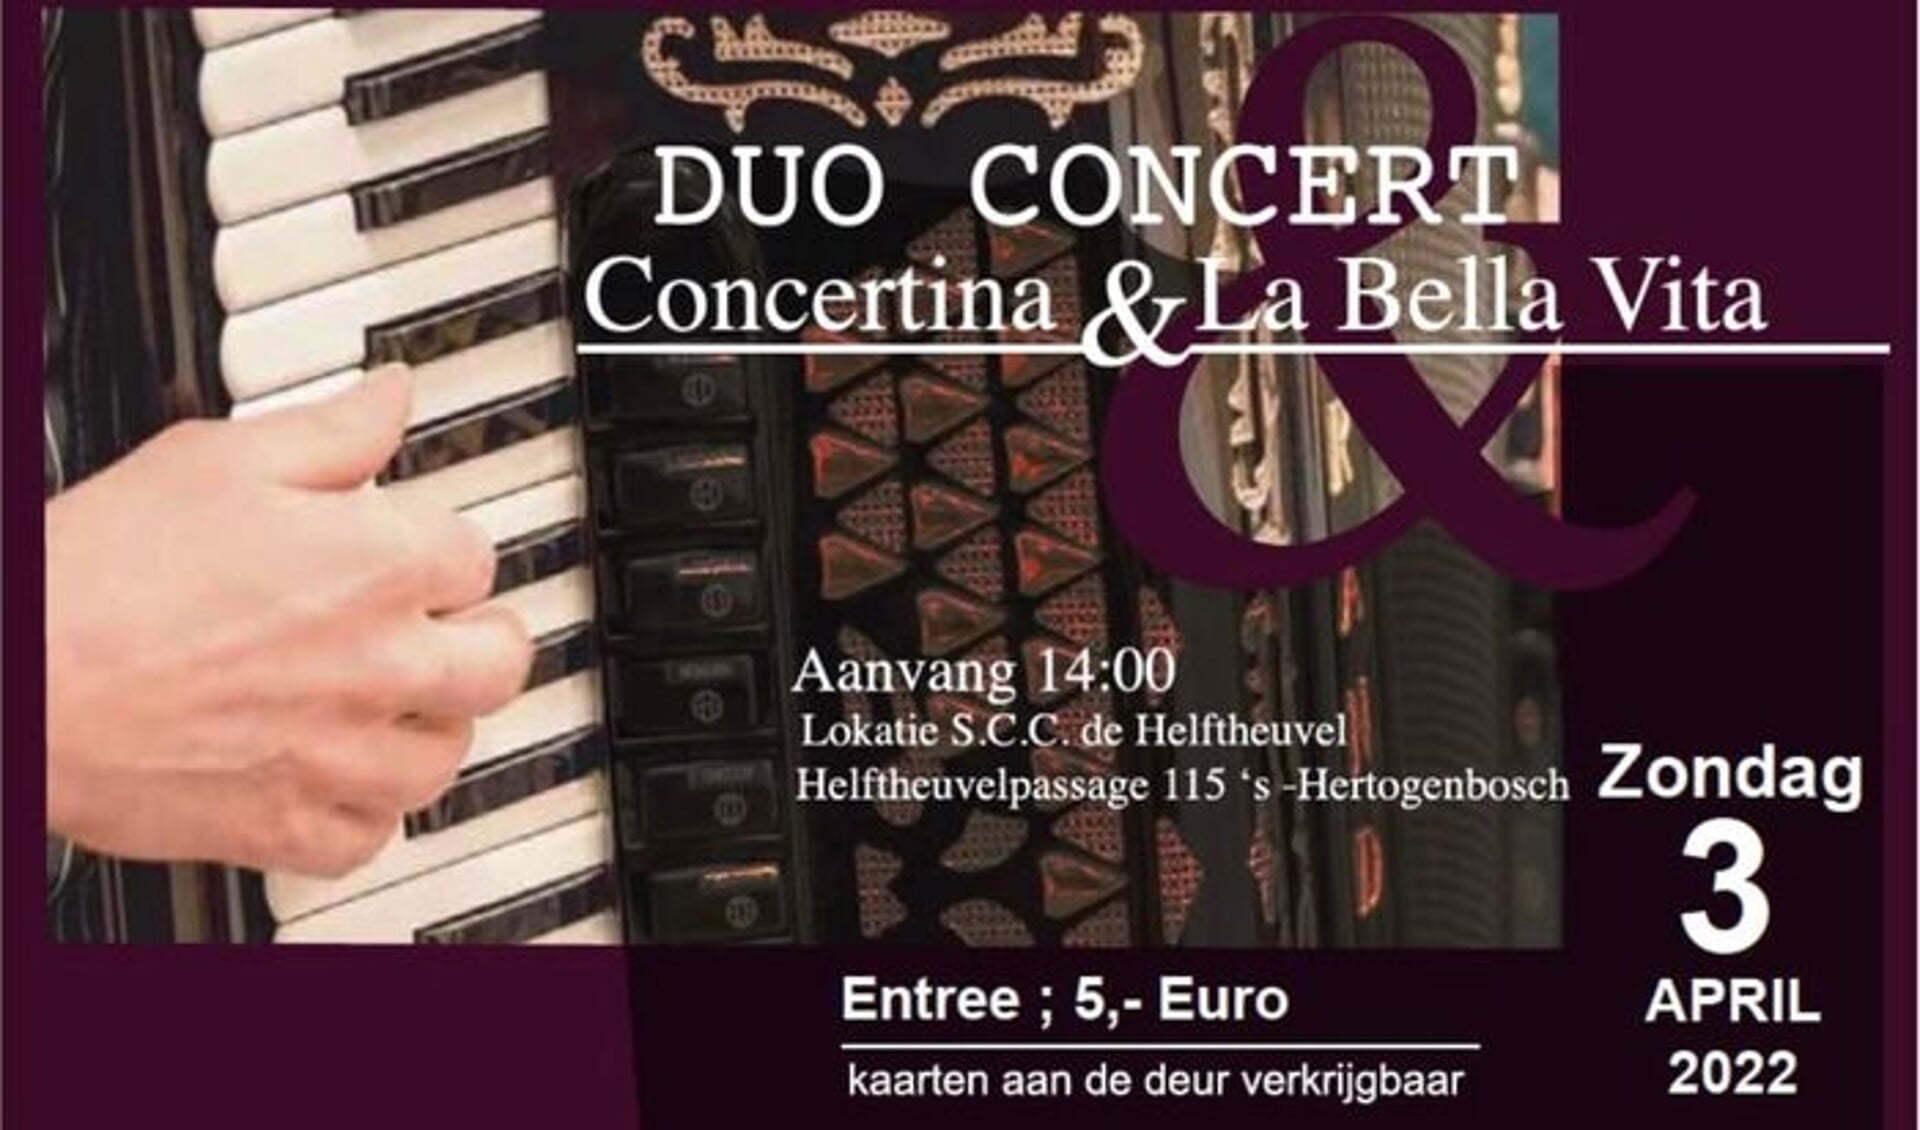 Duo-concert AV La Bella Vita en AV Concertina op zondag 3 april.